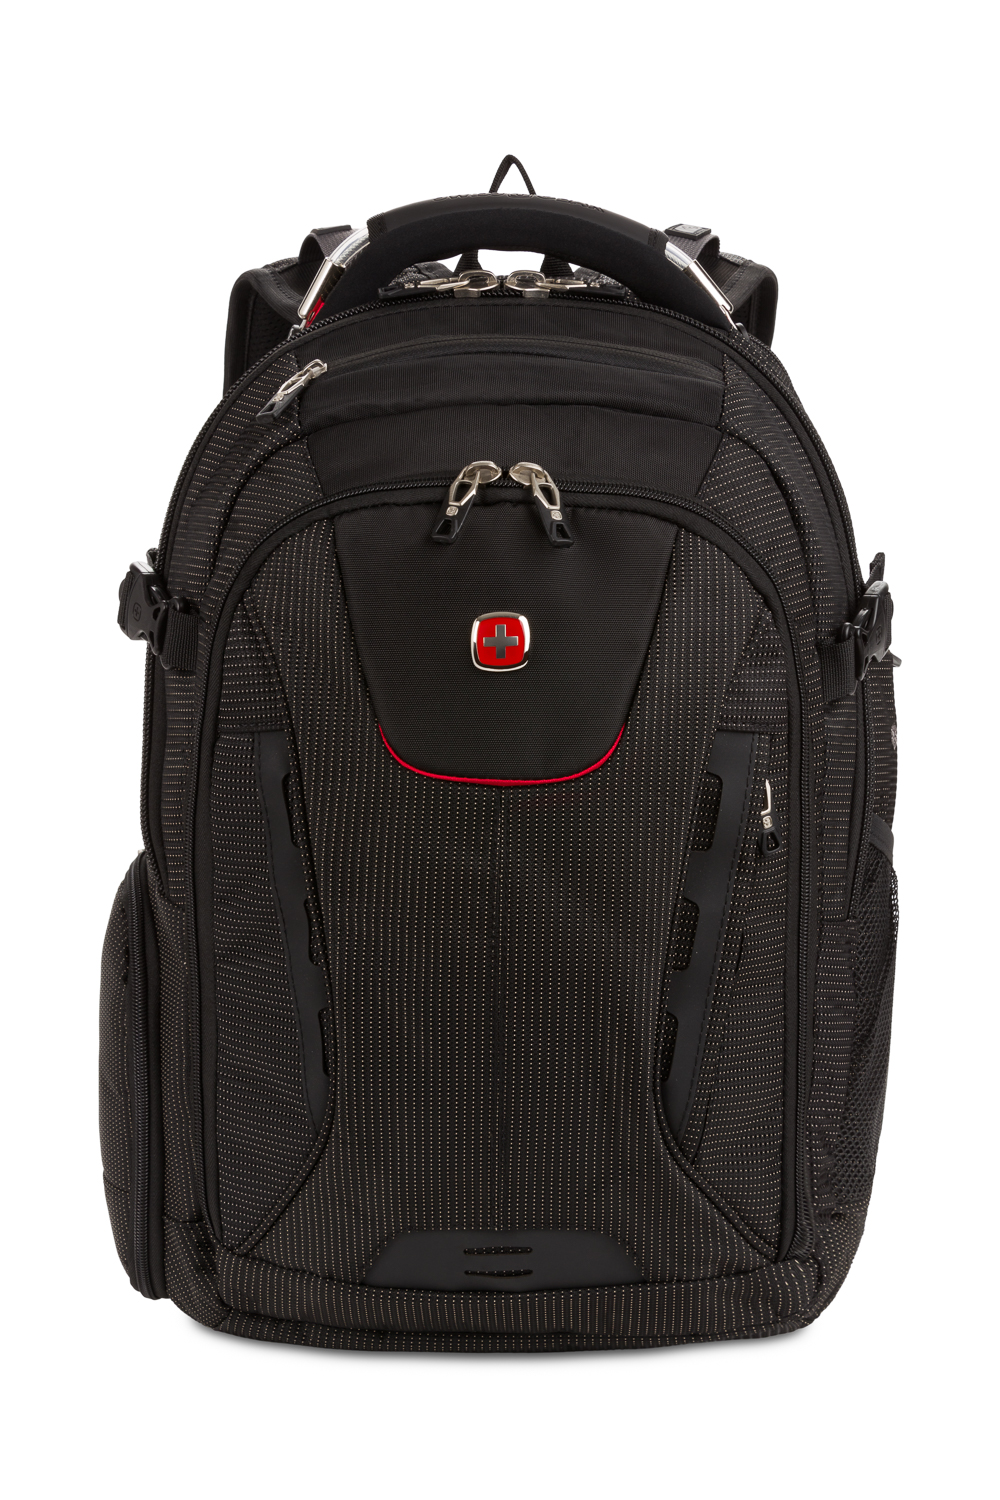 SwissGear 5358 ScanSmart Laptop Backpack